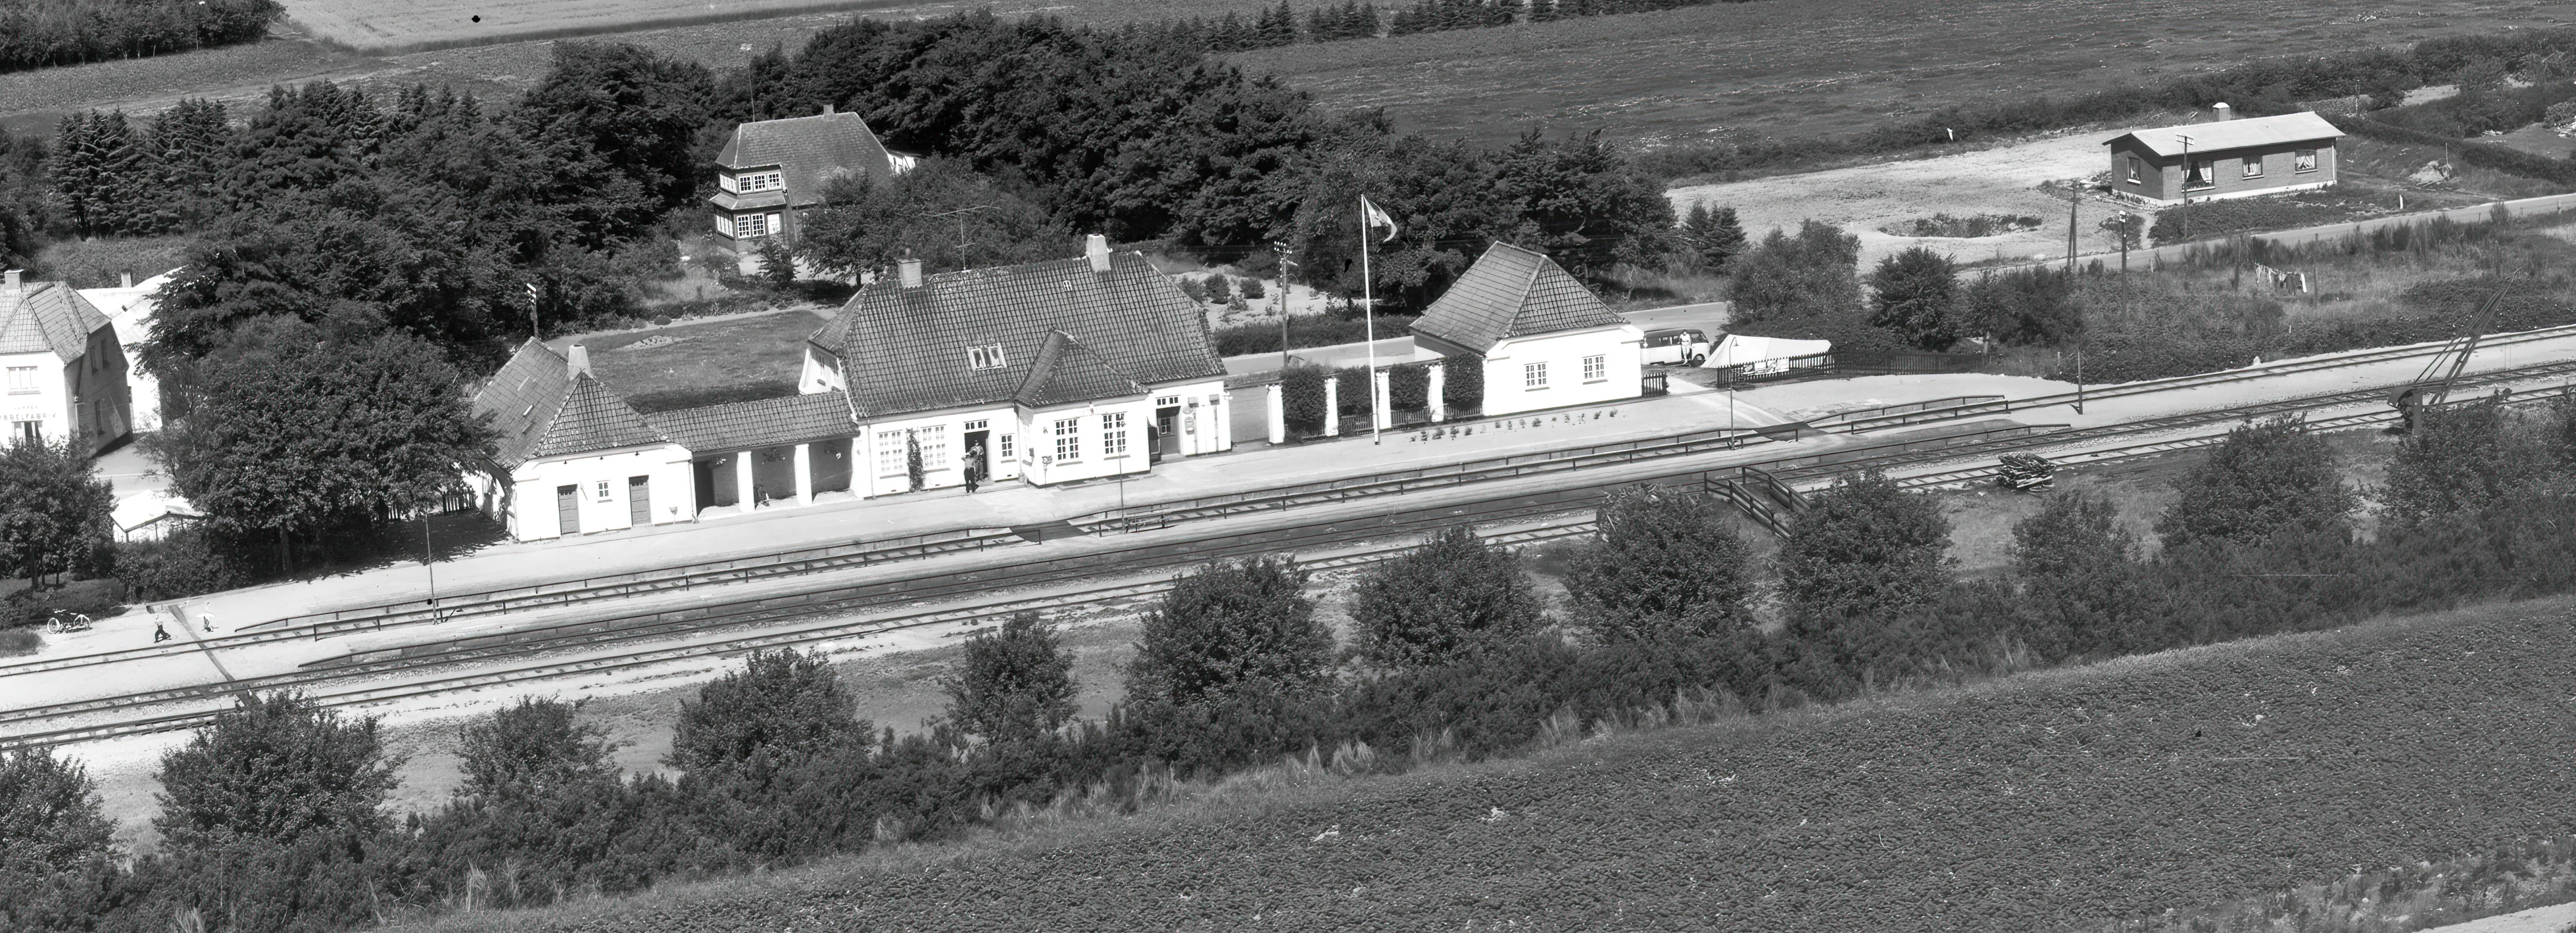 Billede af Hampen Station.